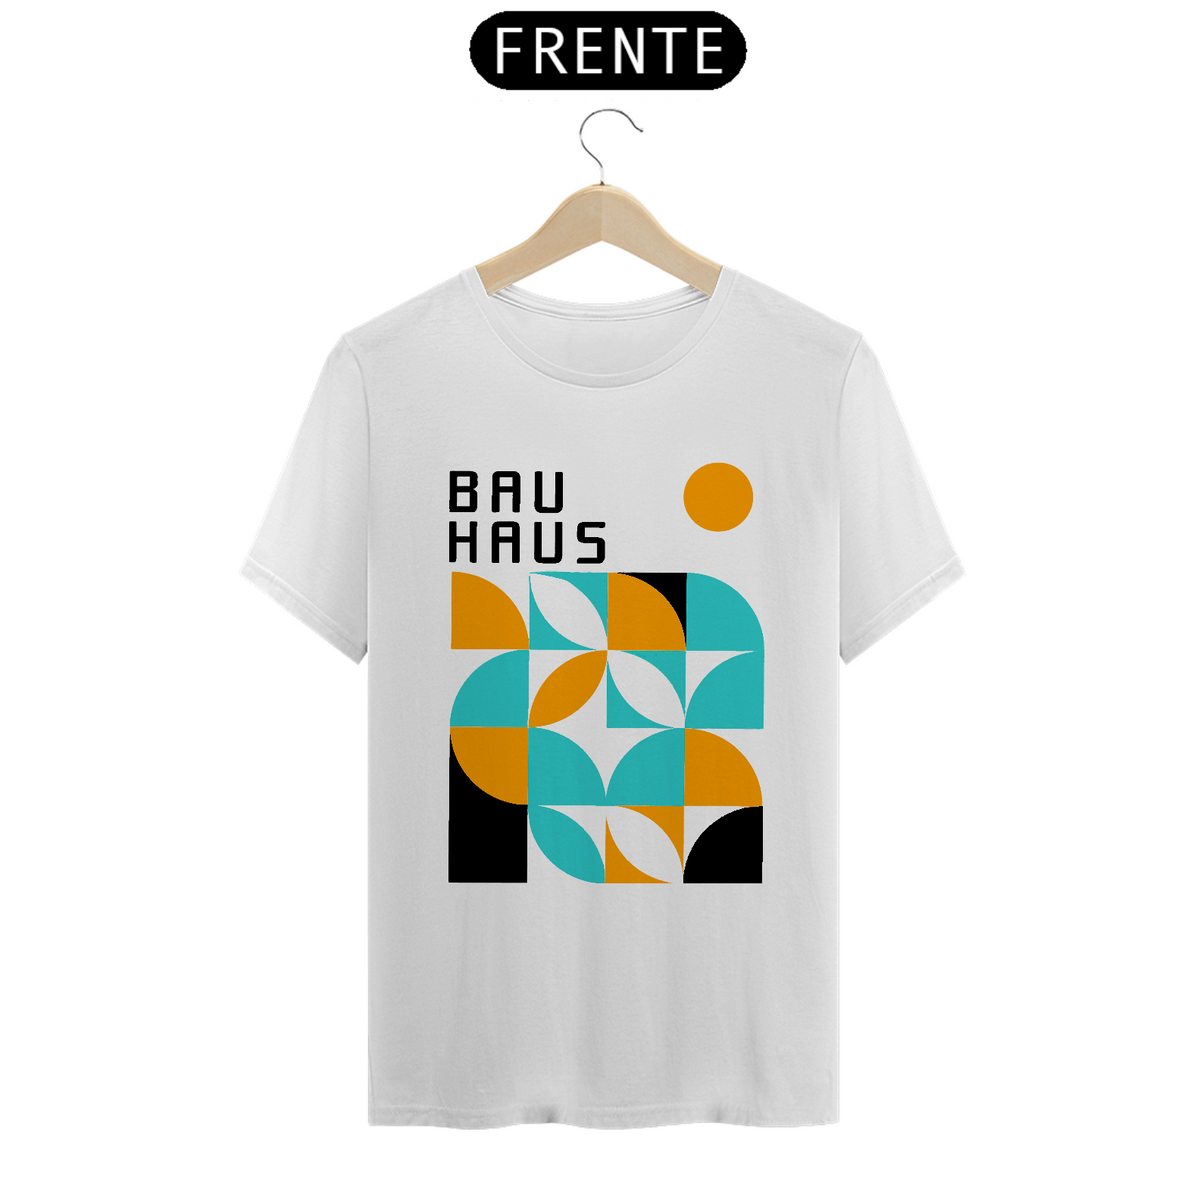 Nome do produto: Bauhaus 